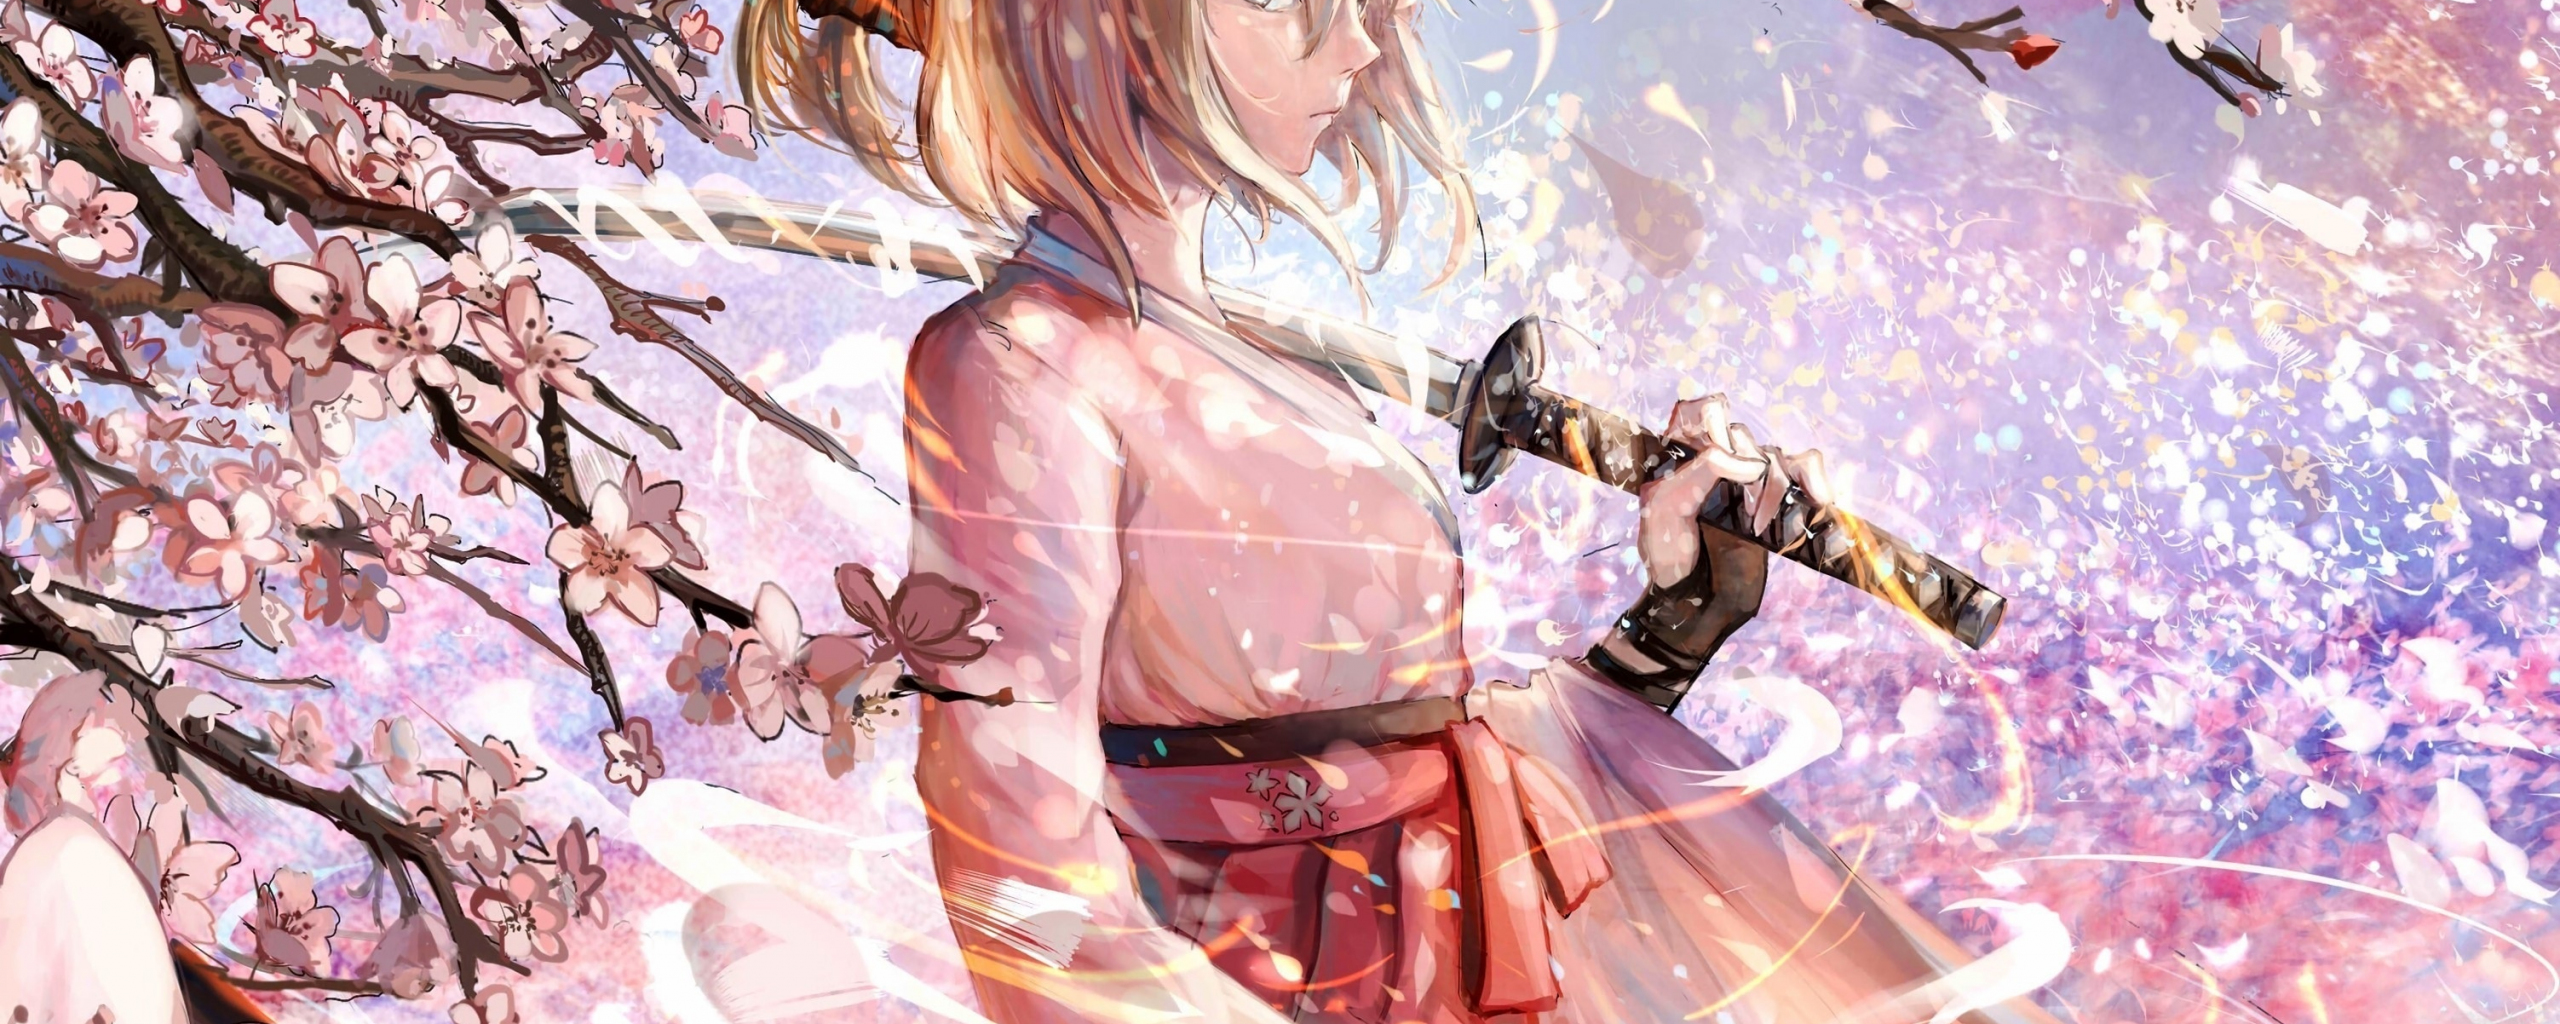 Download wallpaper 2560x1024 sakura saber, katana, cherry blossom ...